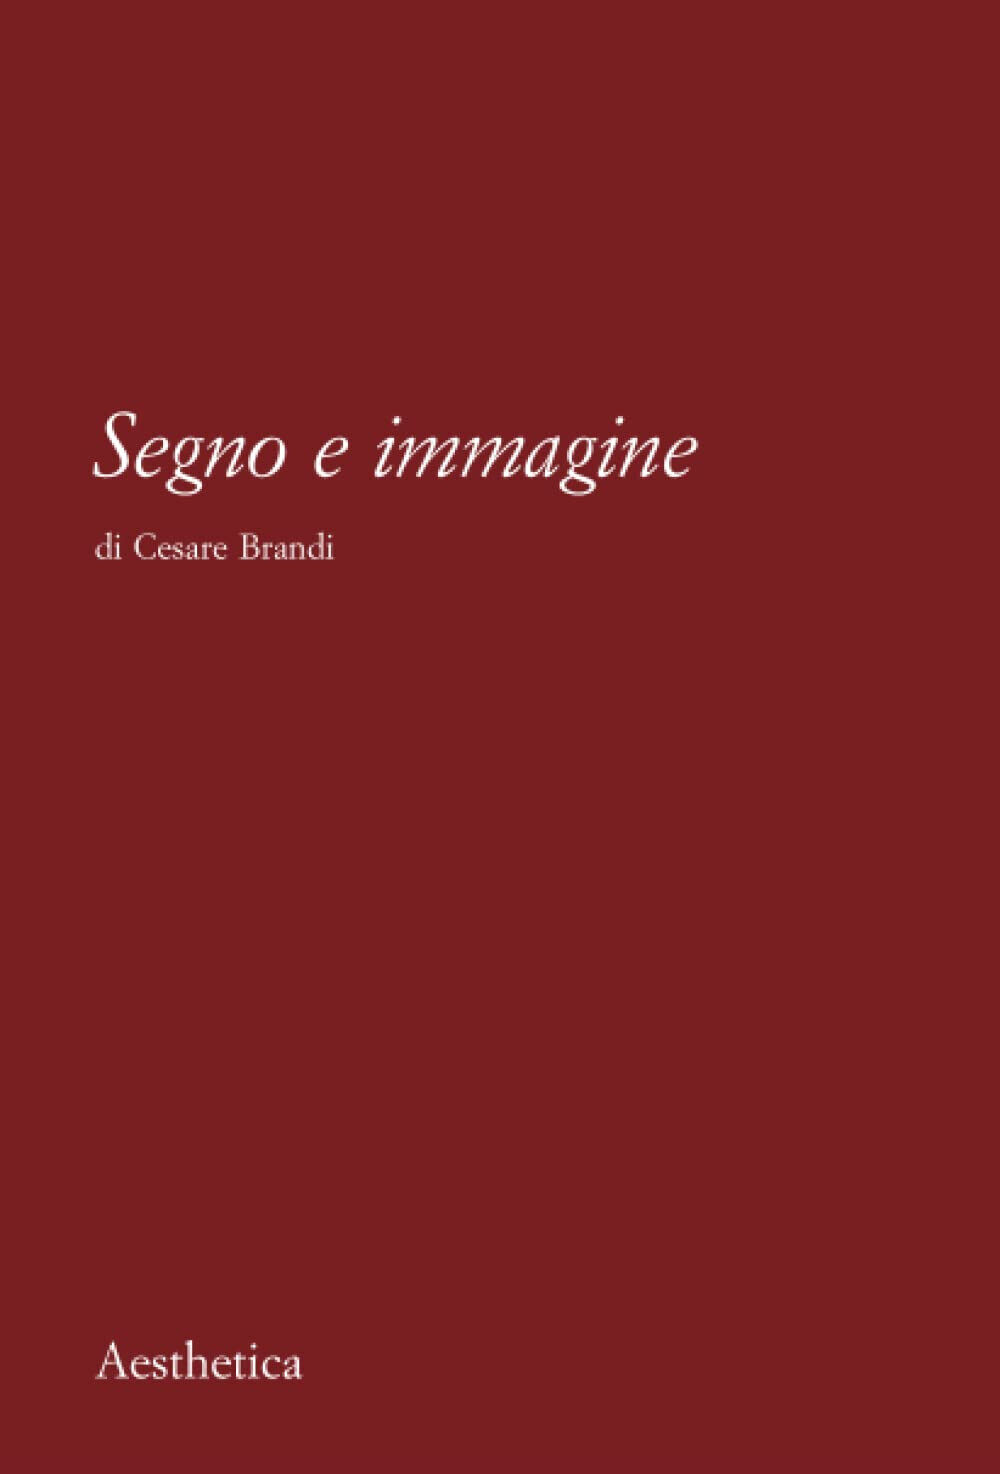 Segno e immagine - Cesare Brandi - Aesthetica, 2010 libro usato